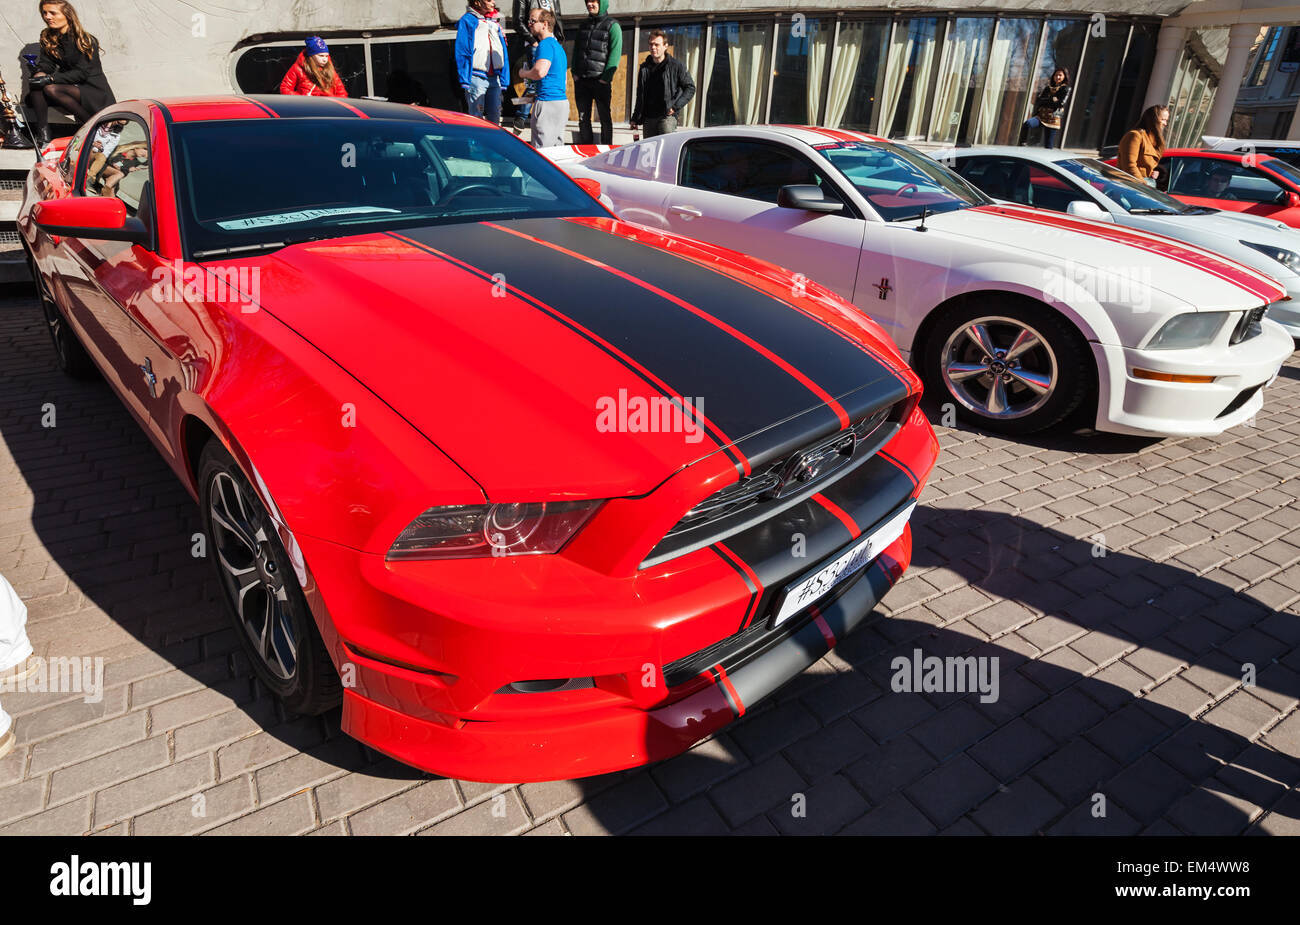 Saint-pétersbourg, Russie - le 11 avril 2015 : Ford Mustang rouge avec des bandes noires est stationné sur la rue de la ville Banque D'Images